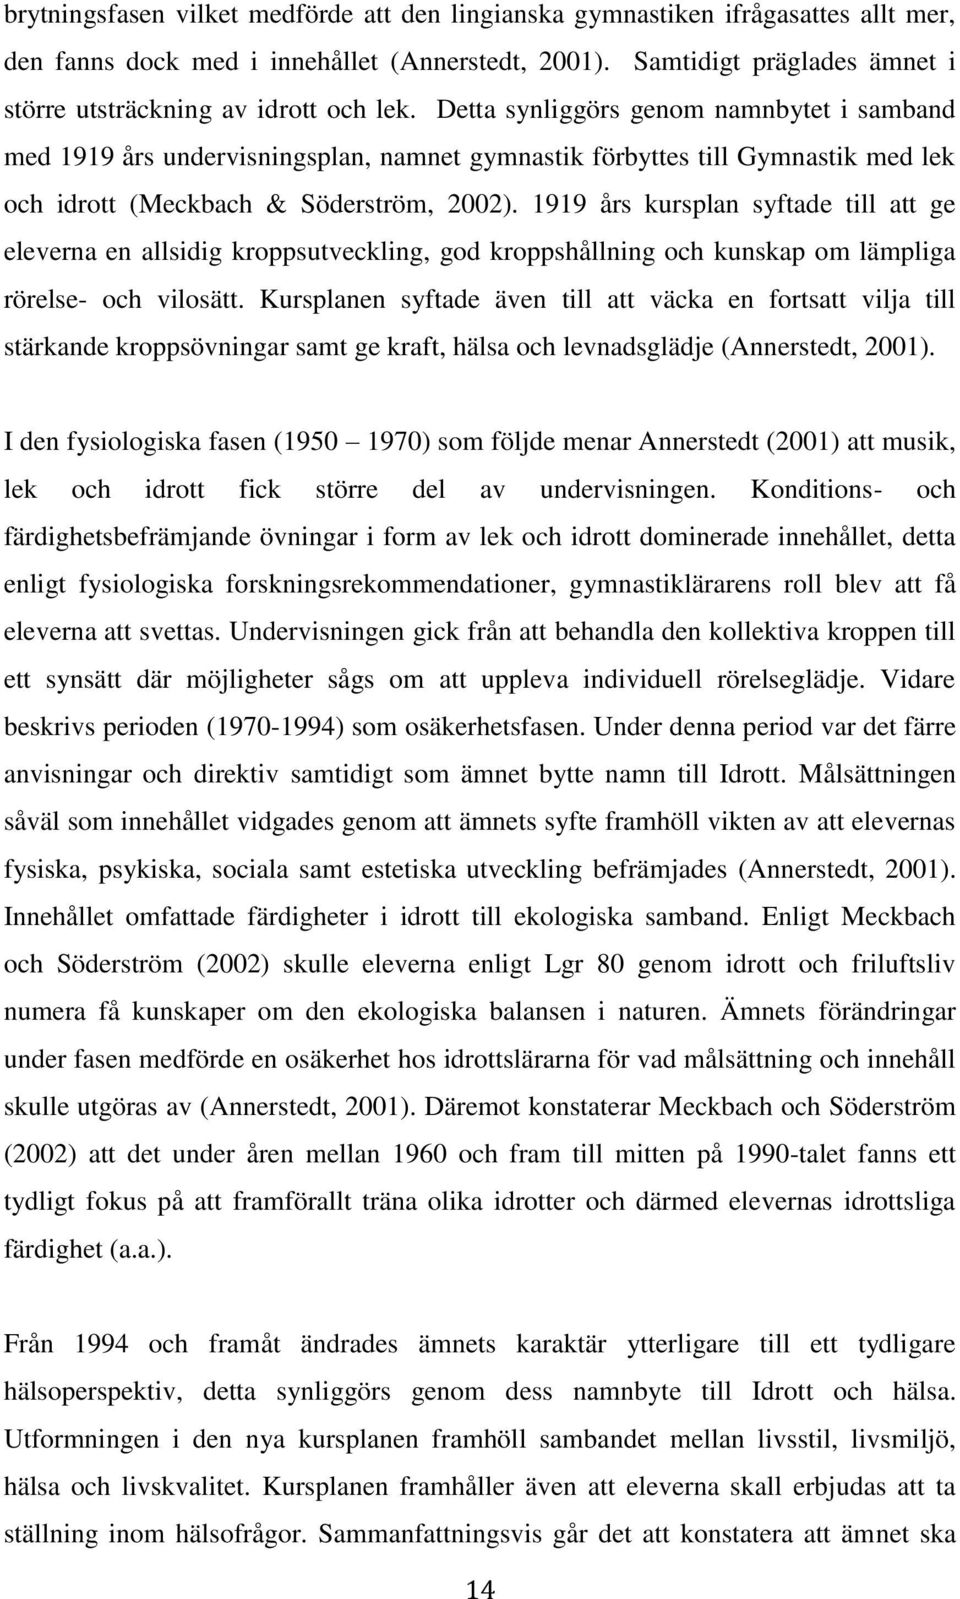 Detta synliggörs genom namnbytet i samband med 1919 års undervisningsplan, namnet gymnastik förbyttes till Gymnastik med lek och idrott (Meckbach & Söderström, 2002).